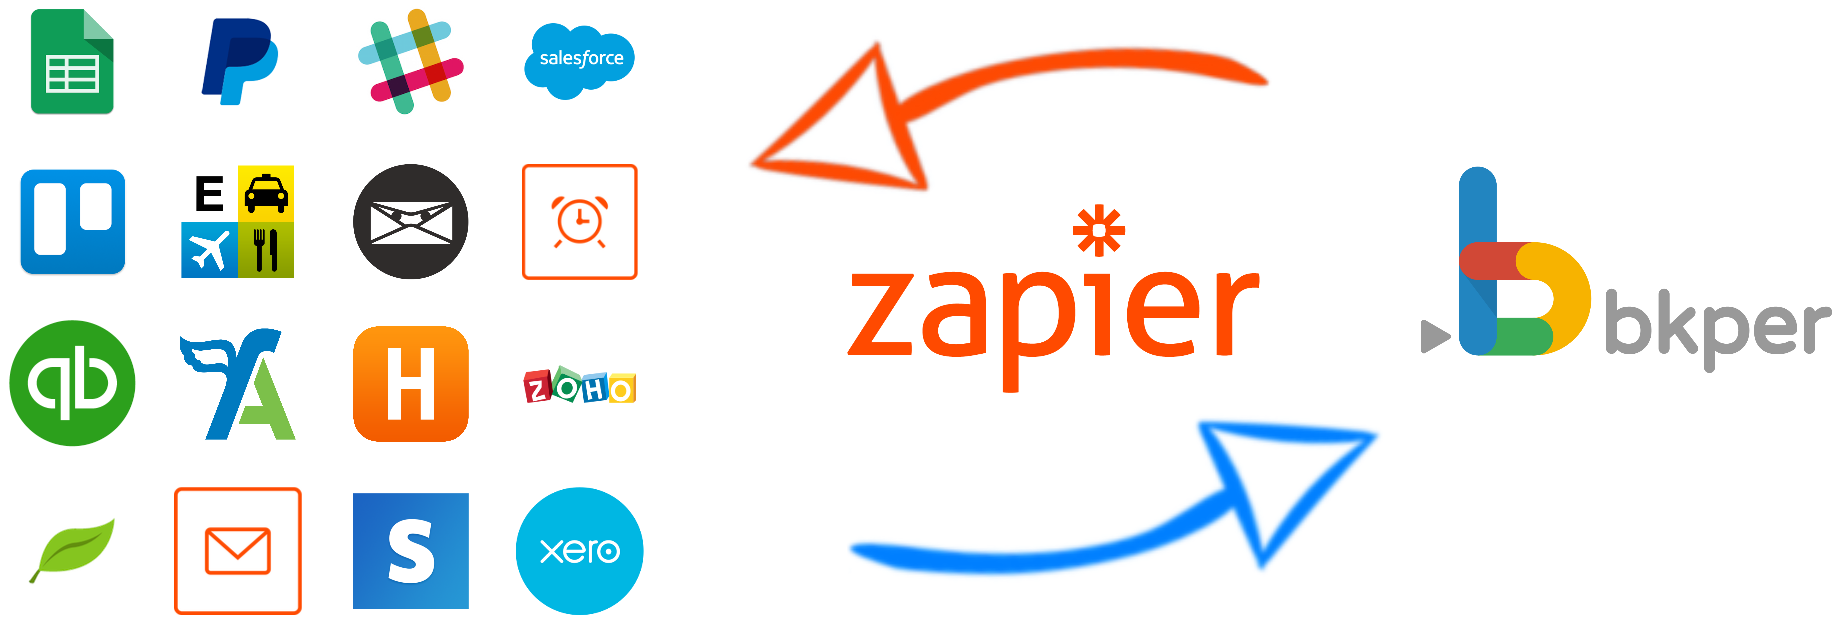 Integrate_bkper_Apps_Zapier